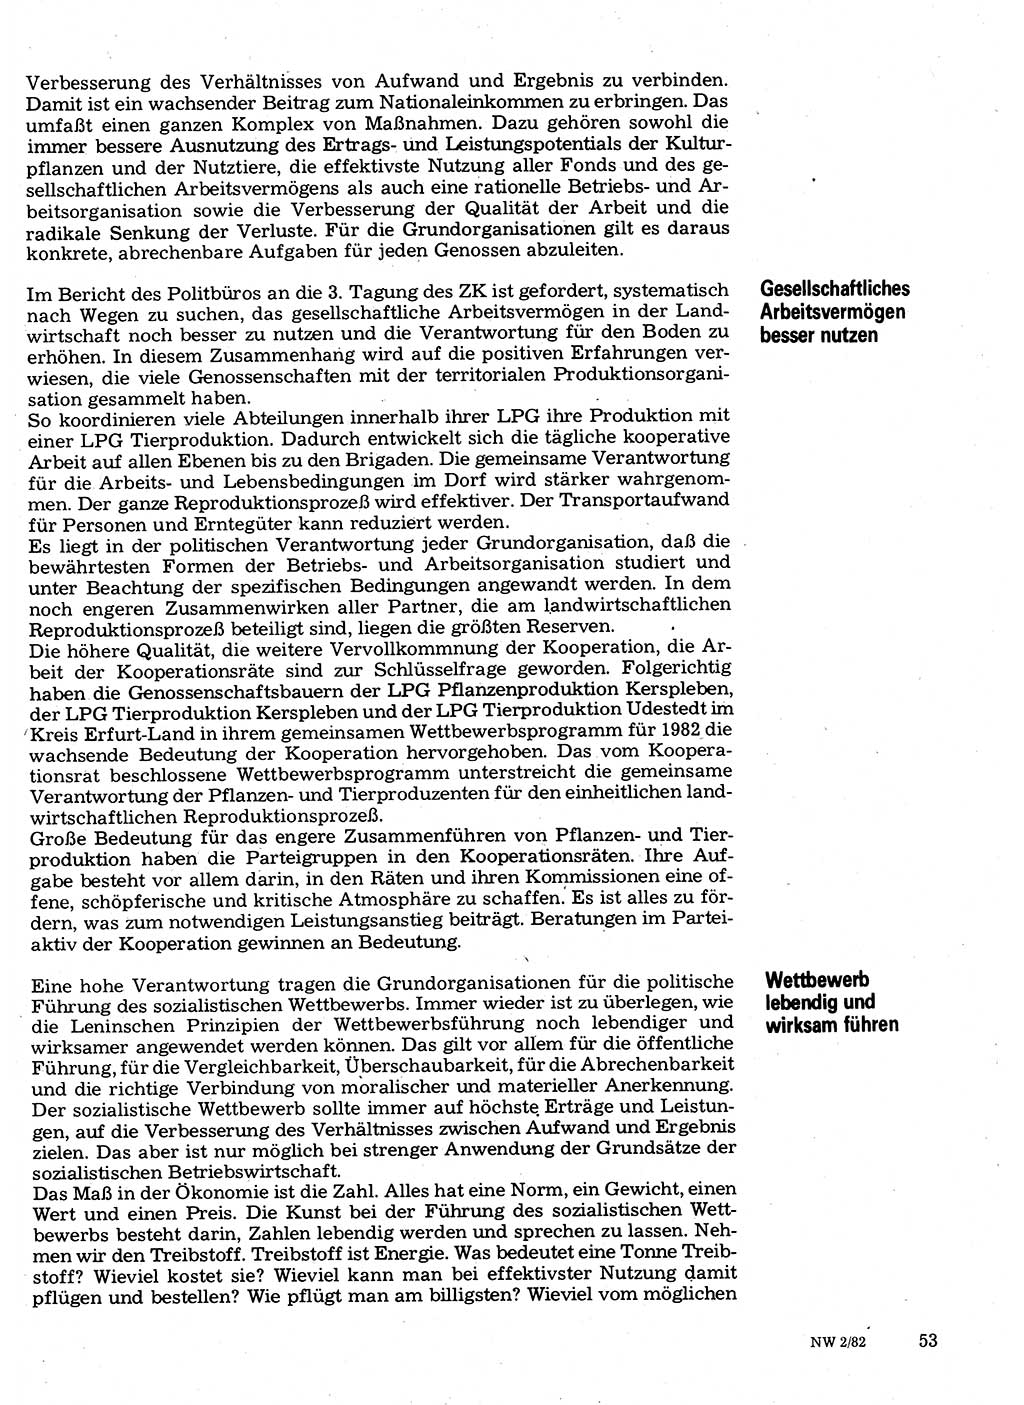 Neuer Weg (NW), Organ des Zentralkomitees (ZK) der SED (Sozialistische Einheitspartei Deutschlands) für Fragen des Parteilebens, 37. Jahrgang [Deutsche Demokratische Republik (DDR)] 1982, Seite 53 (NW ZK SED DDR 1982, S. 53)